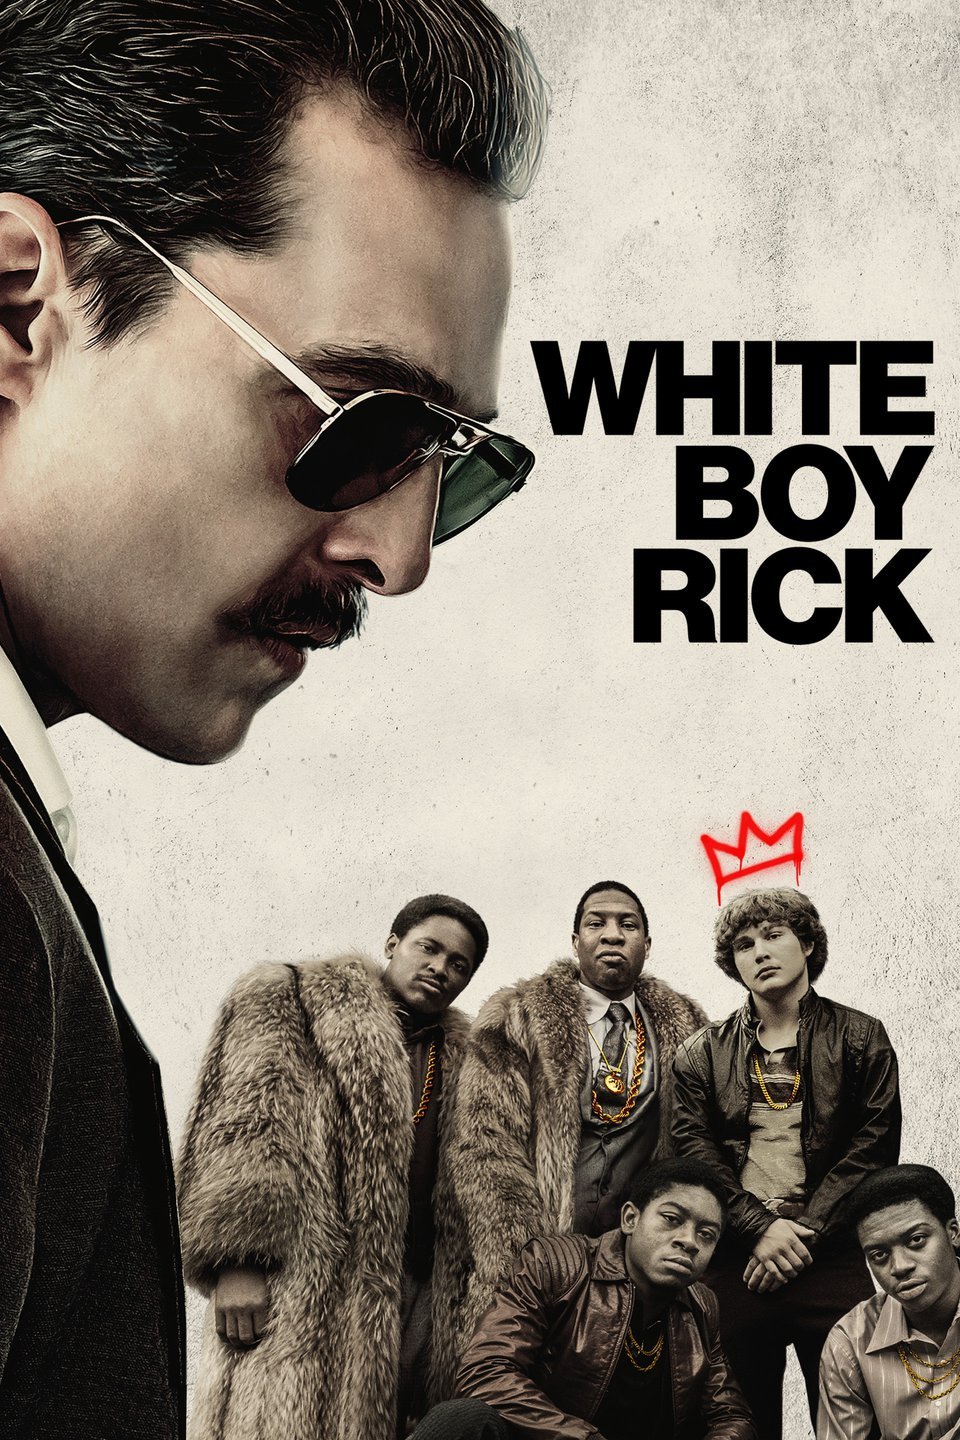 [MINI Super-HQ] White Boy Rick (2018) จอมทรหด [1080p] [พากย์อังกฤษ DTS] [Soundtrack บรรยายไทย + อังกฤษ] [เสียงอังกฤษ + ซับไทย] [ONE2UP]